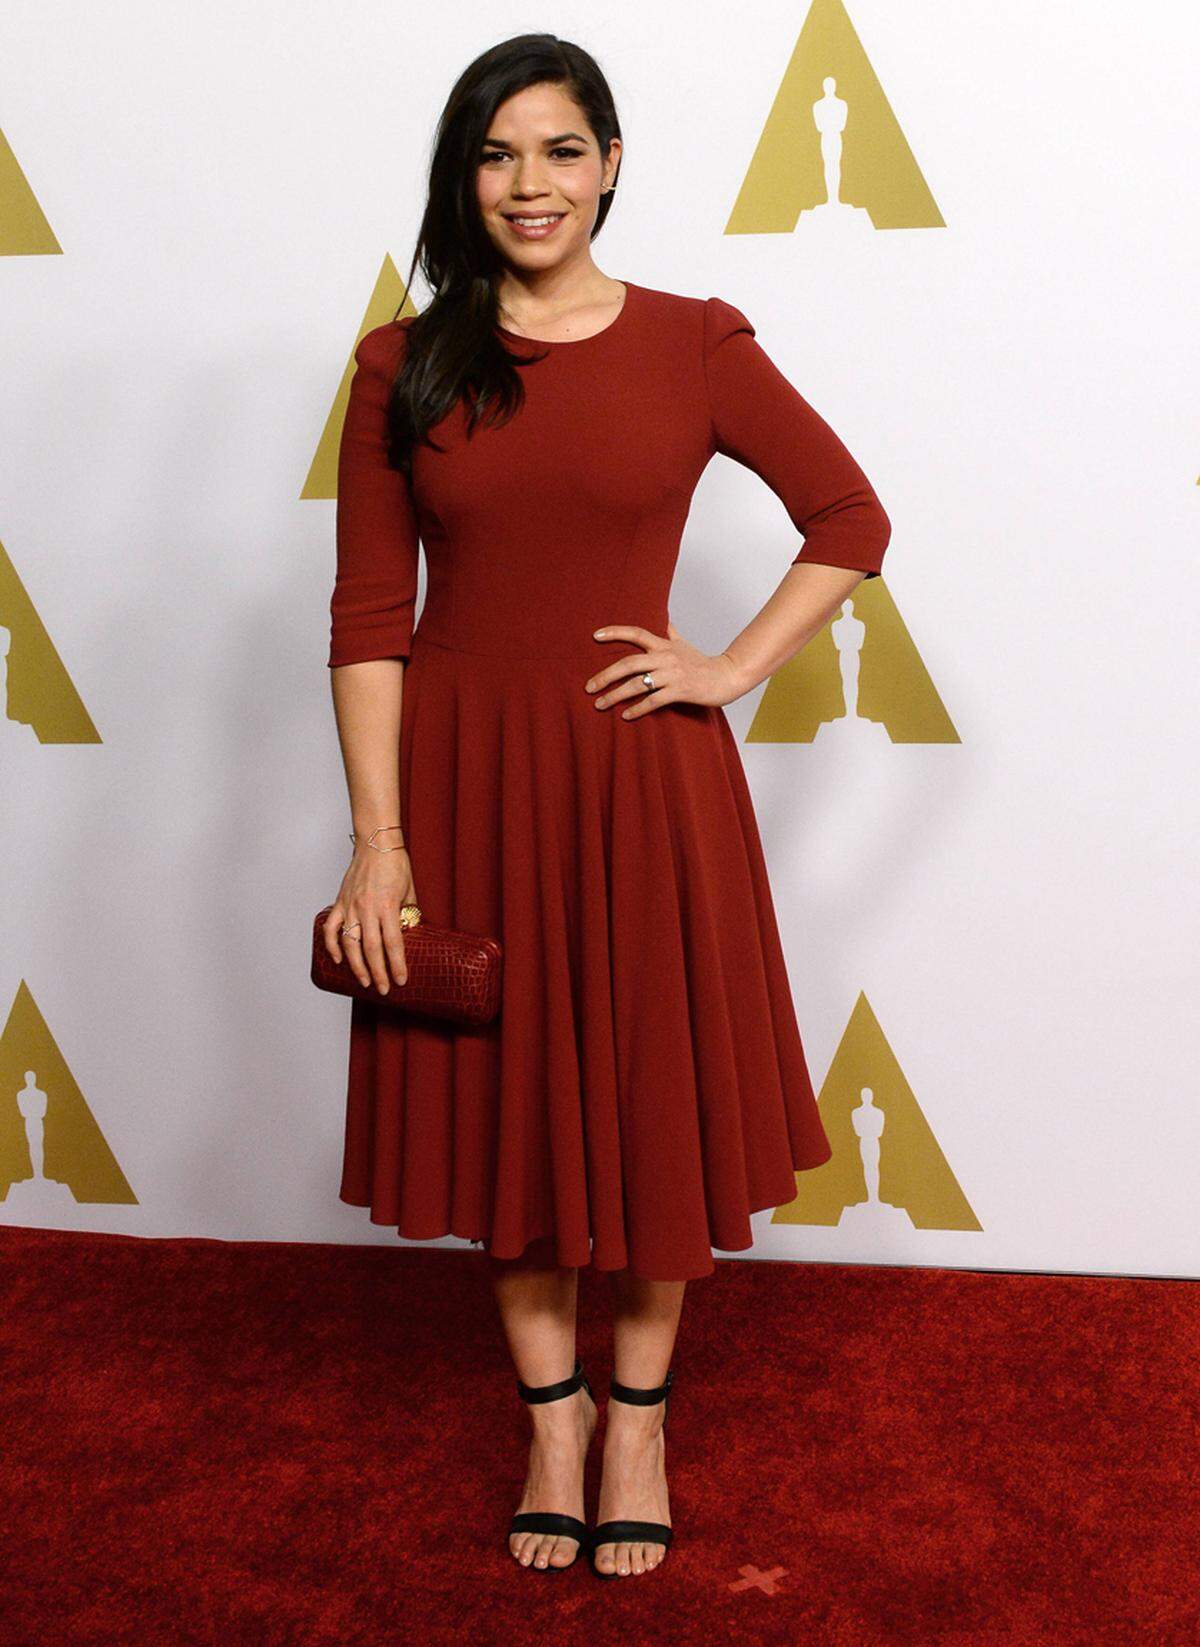 Festlich im roten Kleid mit roter Clutch erschien America Ferrera.